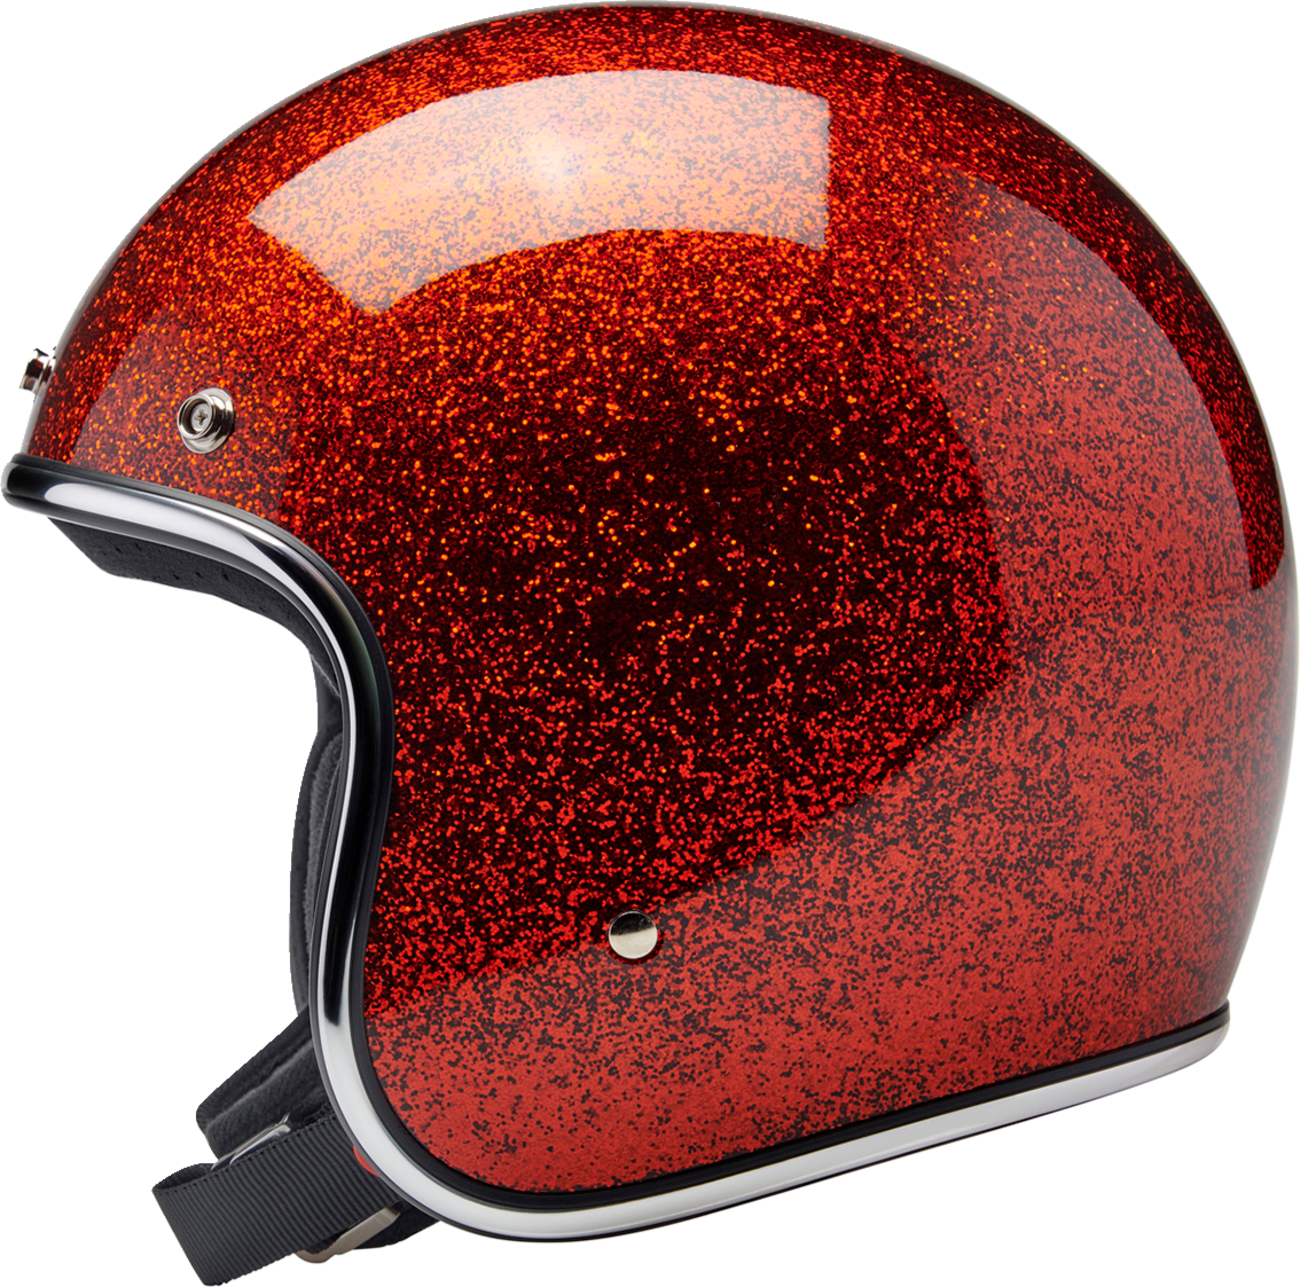 BILTWELL Bonanza Helmet - Rootbeer Megaflake - Medium 1001-457-203